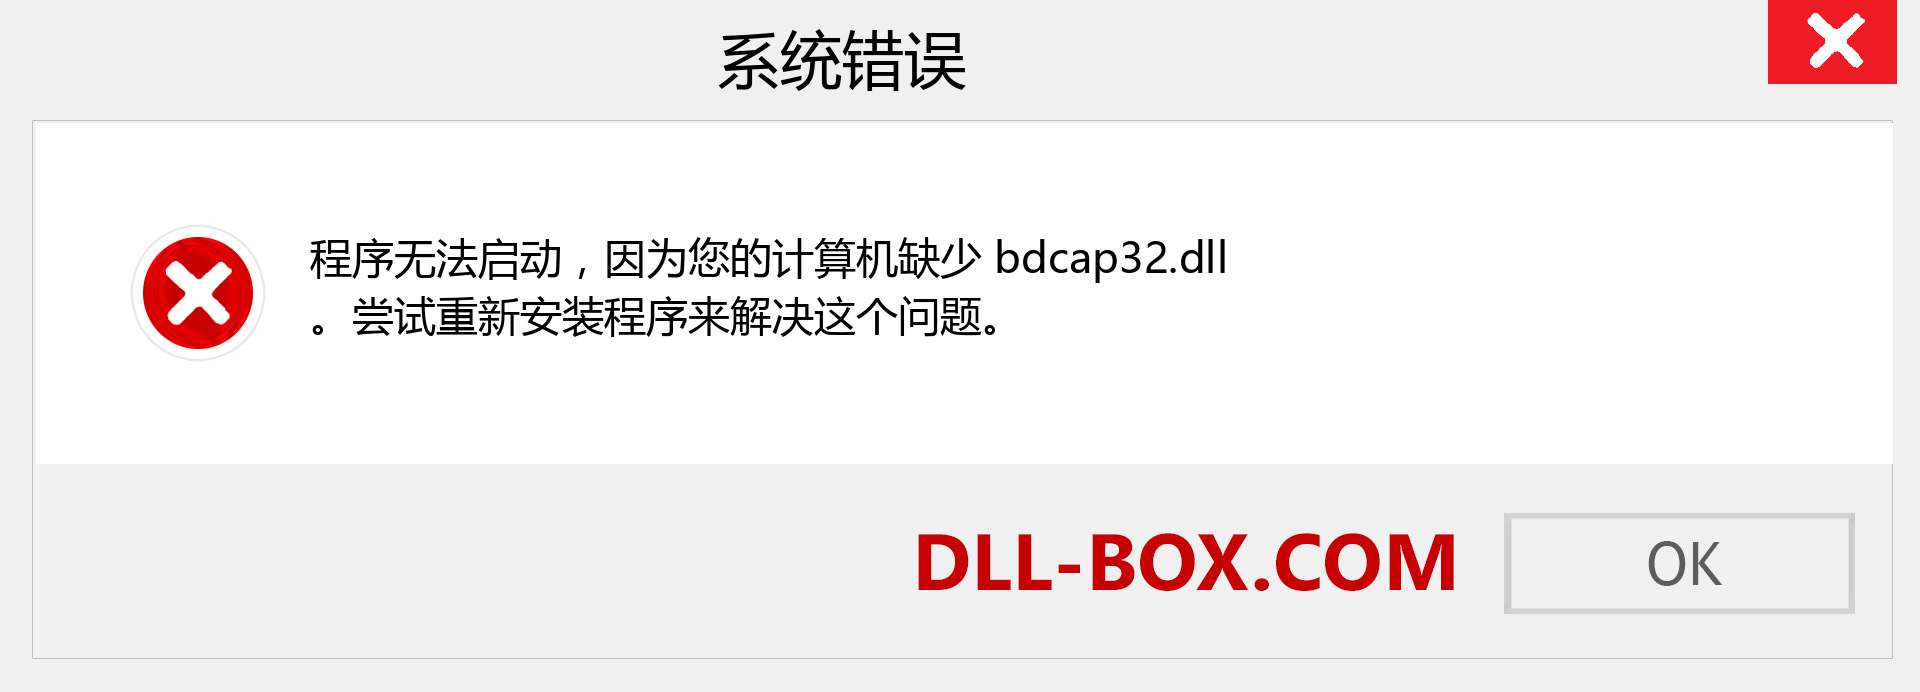 bdcap32.dll 文件丢失？。 适用于 Windows 7、8、10 的下载 - 修复 Windows、照片、图像上的 bdcap32 dll 丢失错误